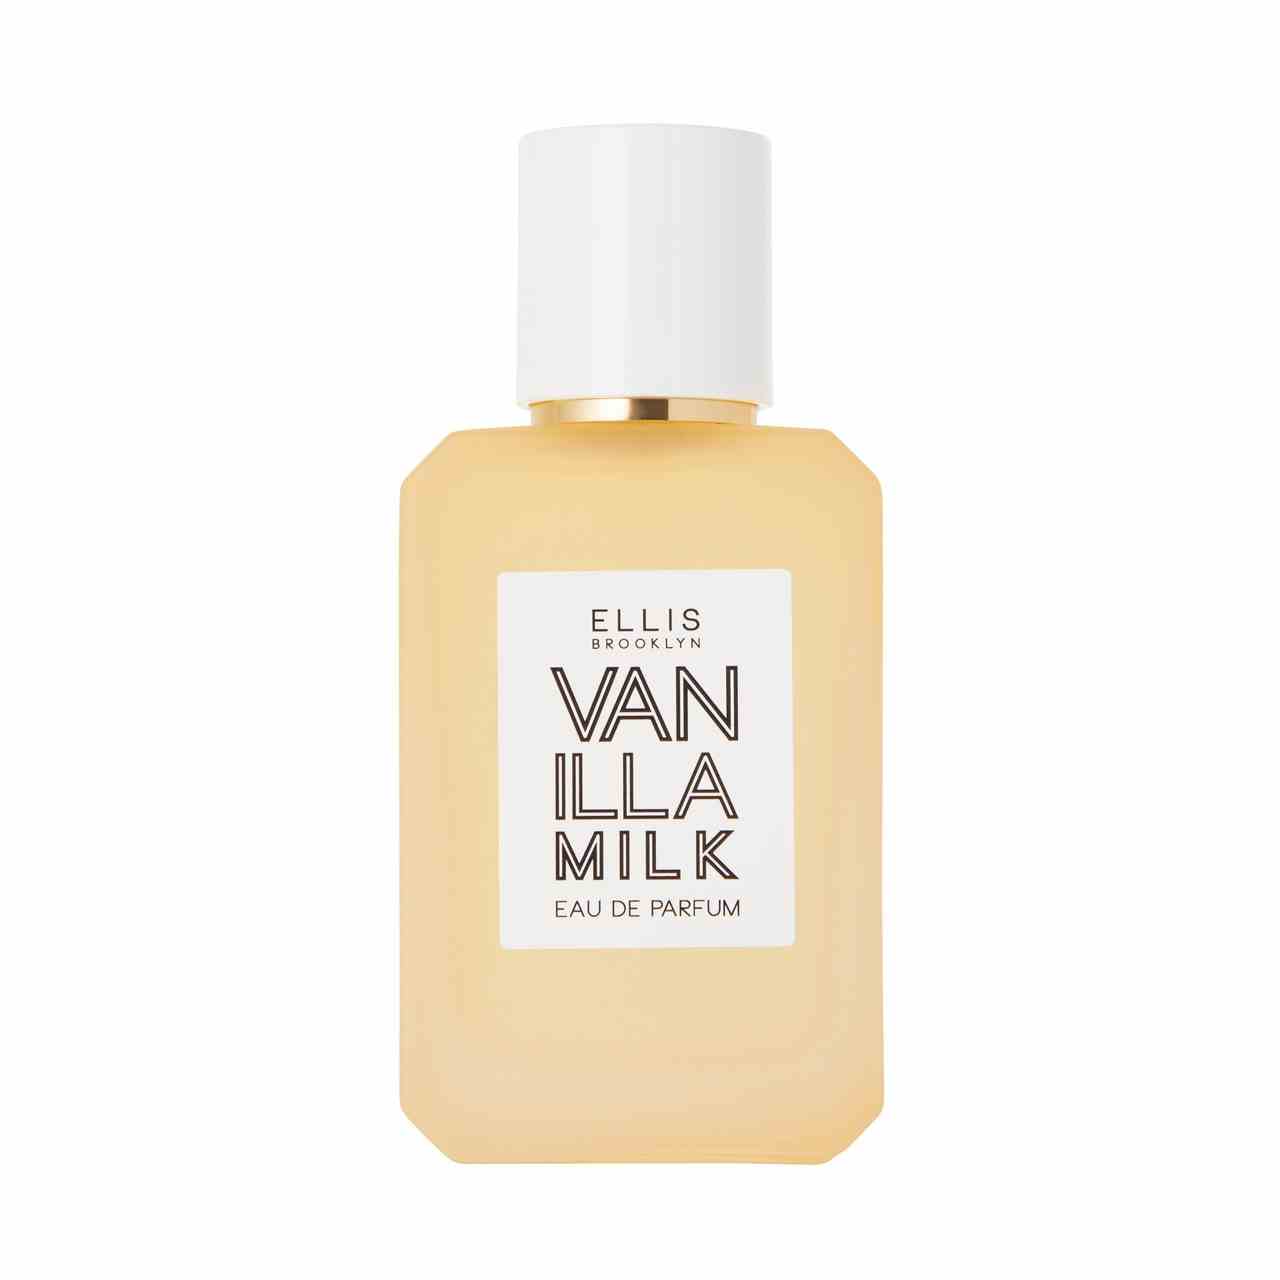 Ellis Brooklyn Vanilla Milk Eau de Parfum gelbe rechteckige Flasche mit weißem Deckel auf weißem Hintergrund